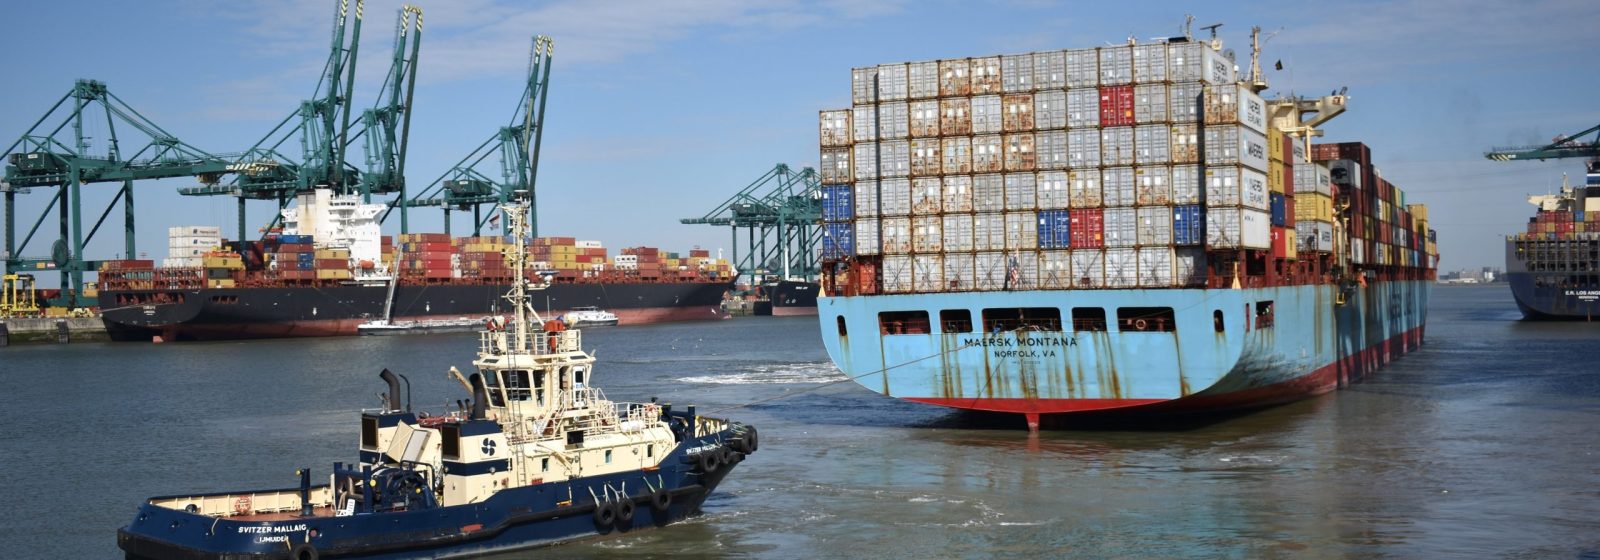 De 'Maersk Montana' (4.822 teu) komt aan in het Deurganckdok.